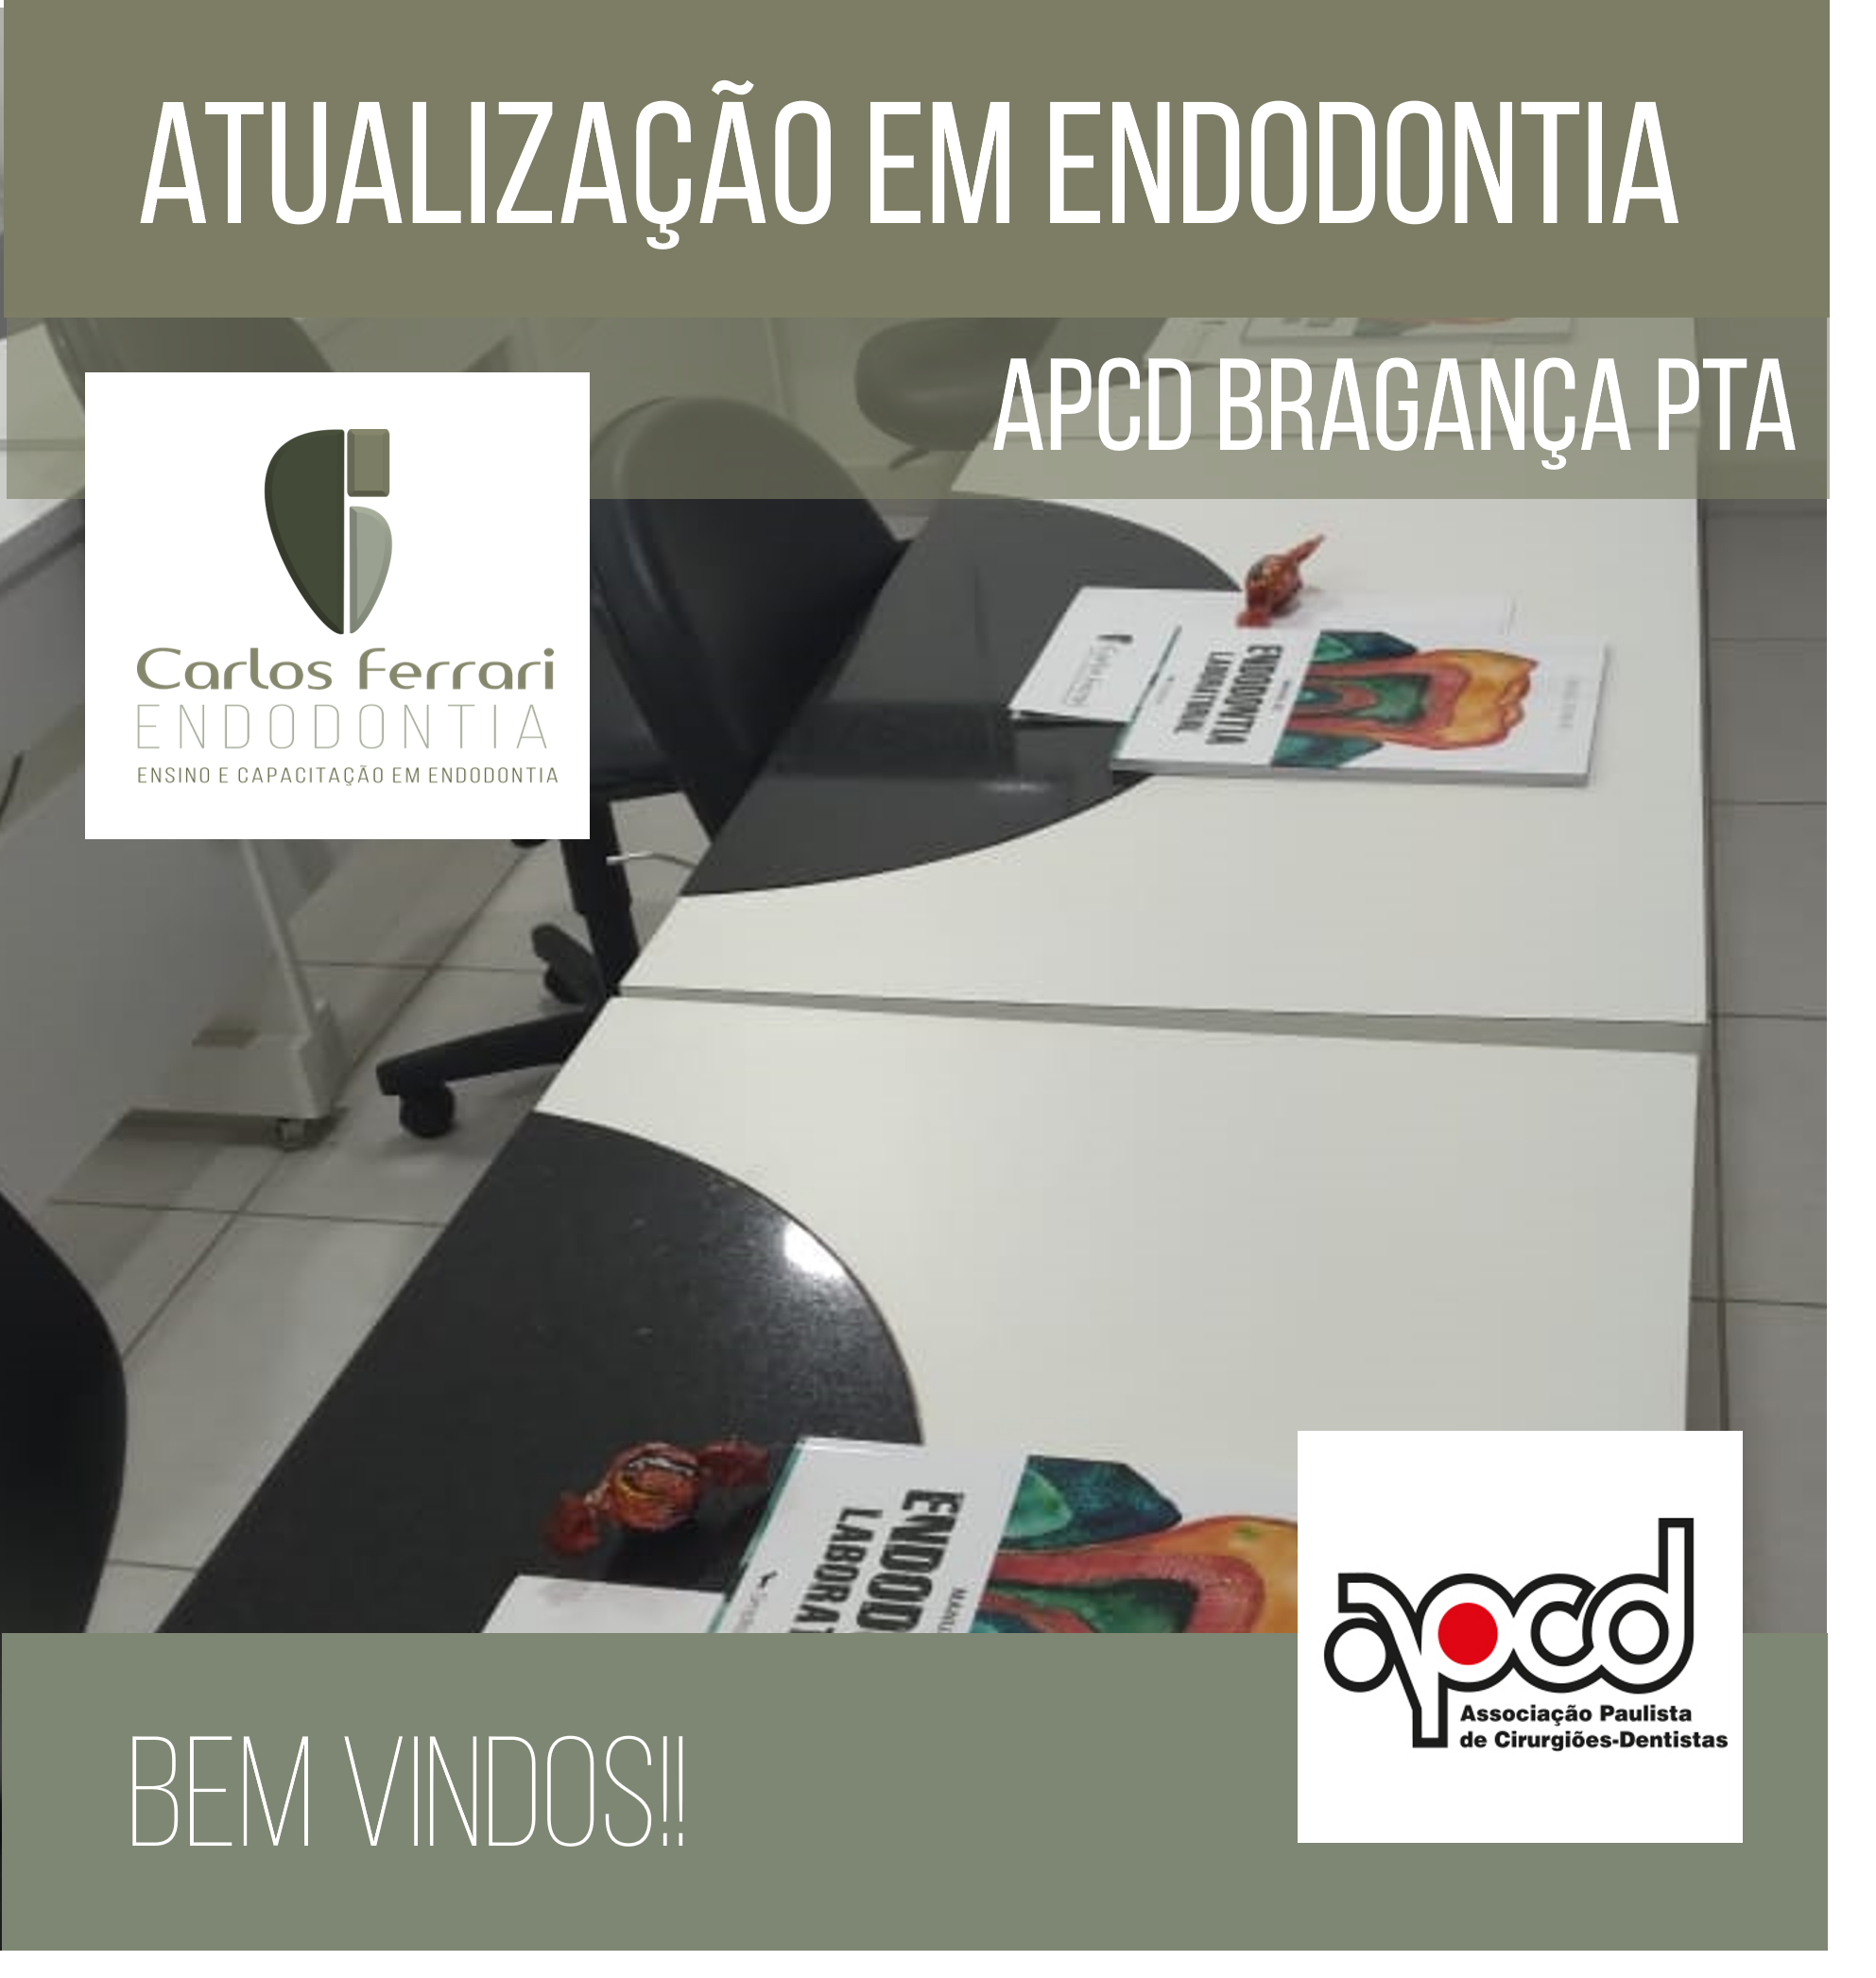 Estás viendo Actualización sobre endodoncia en Bragança Paulista